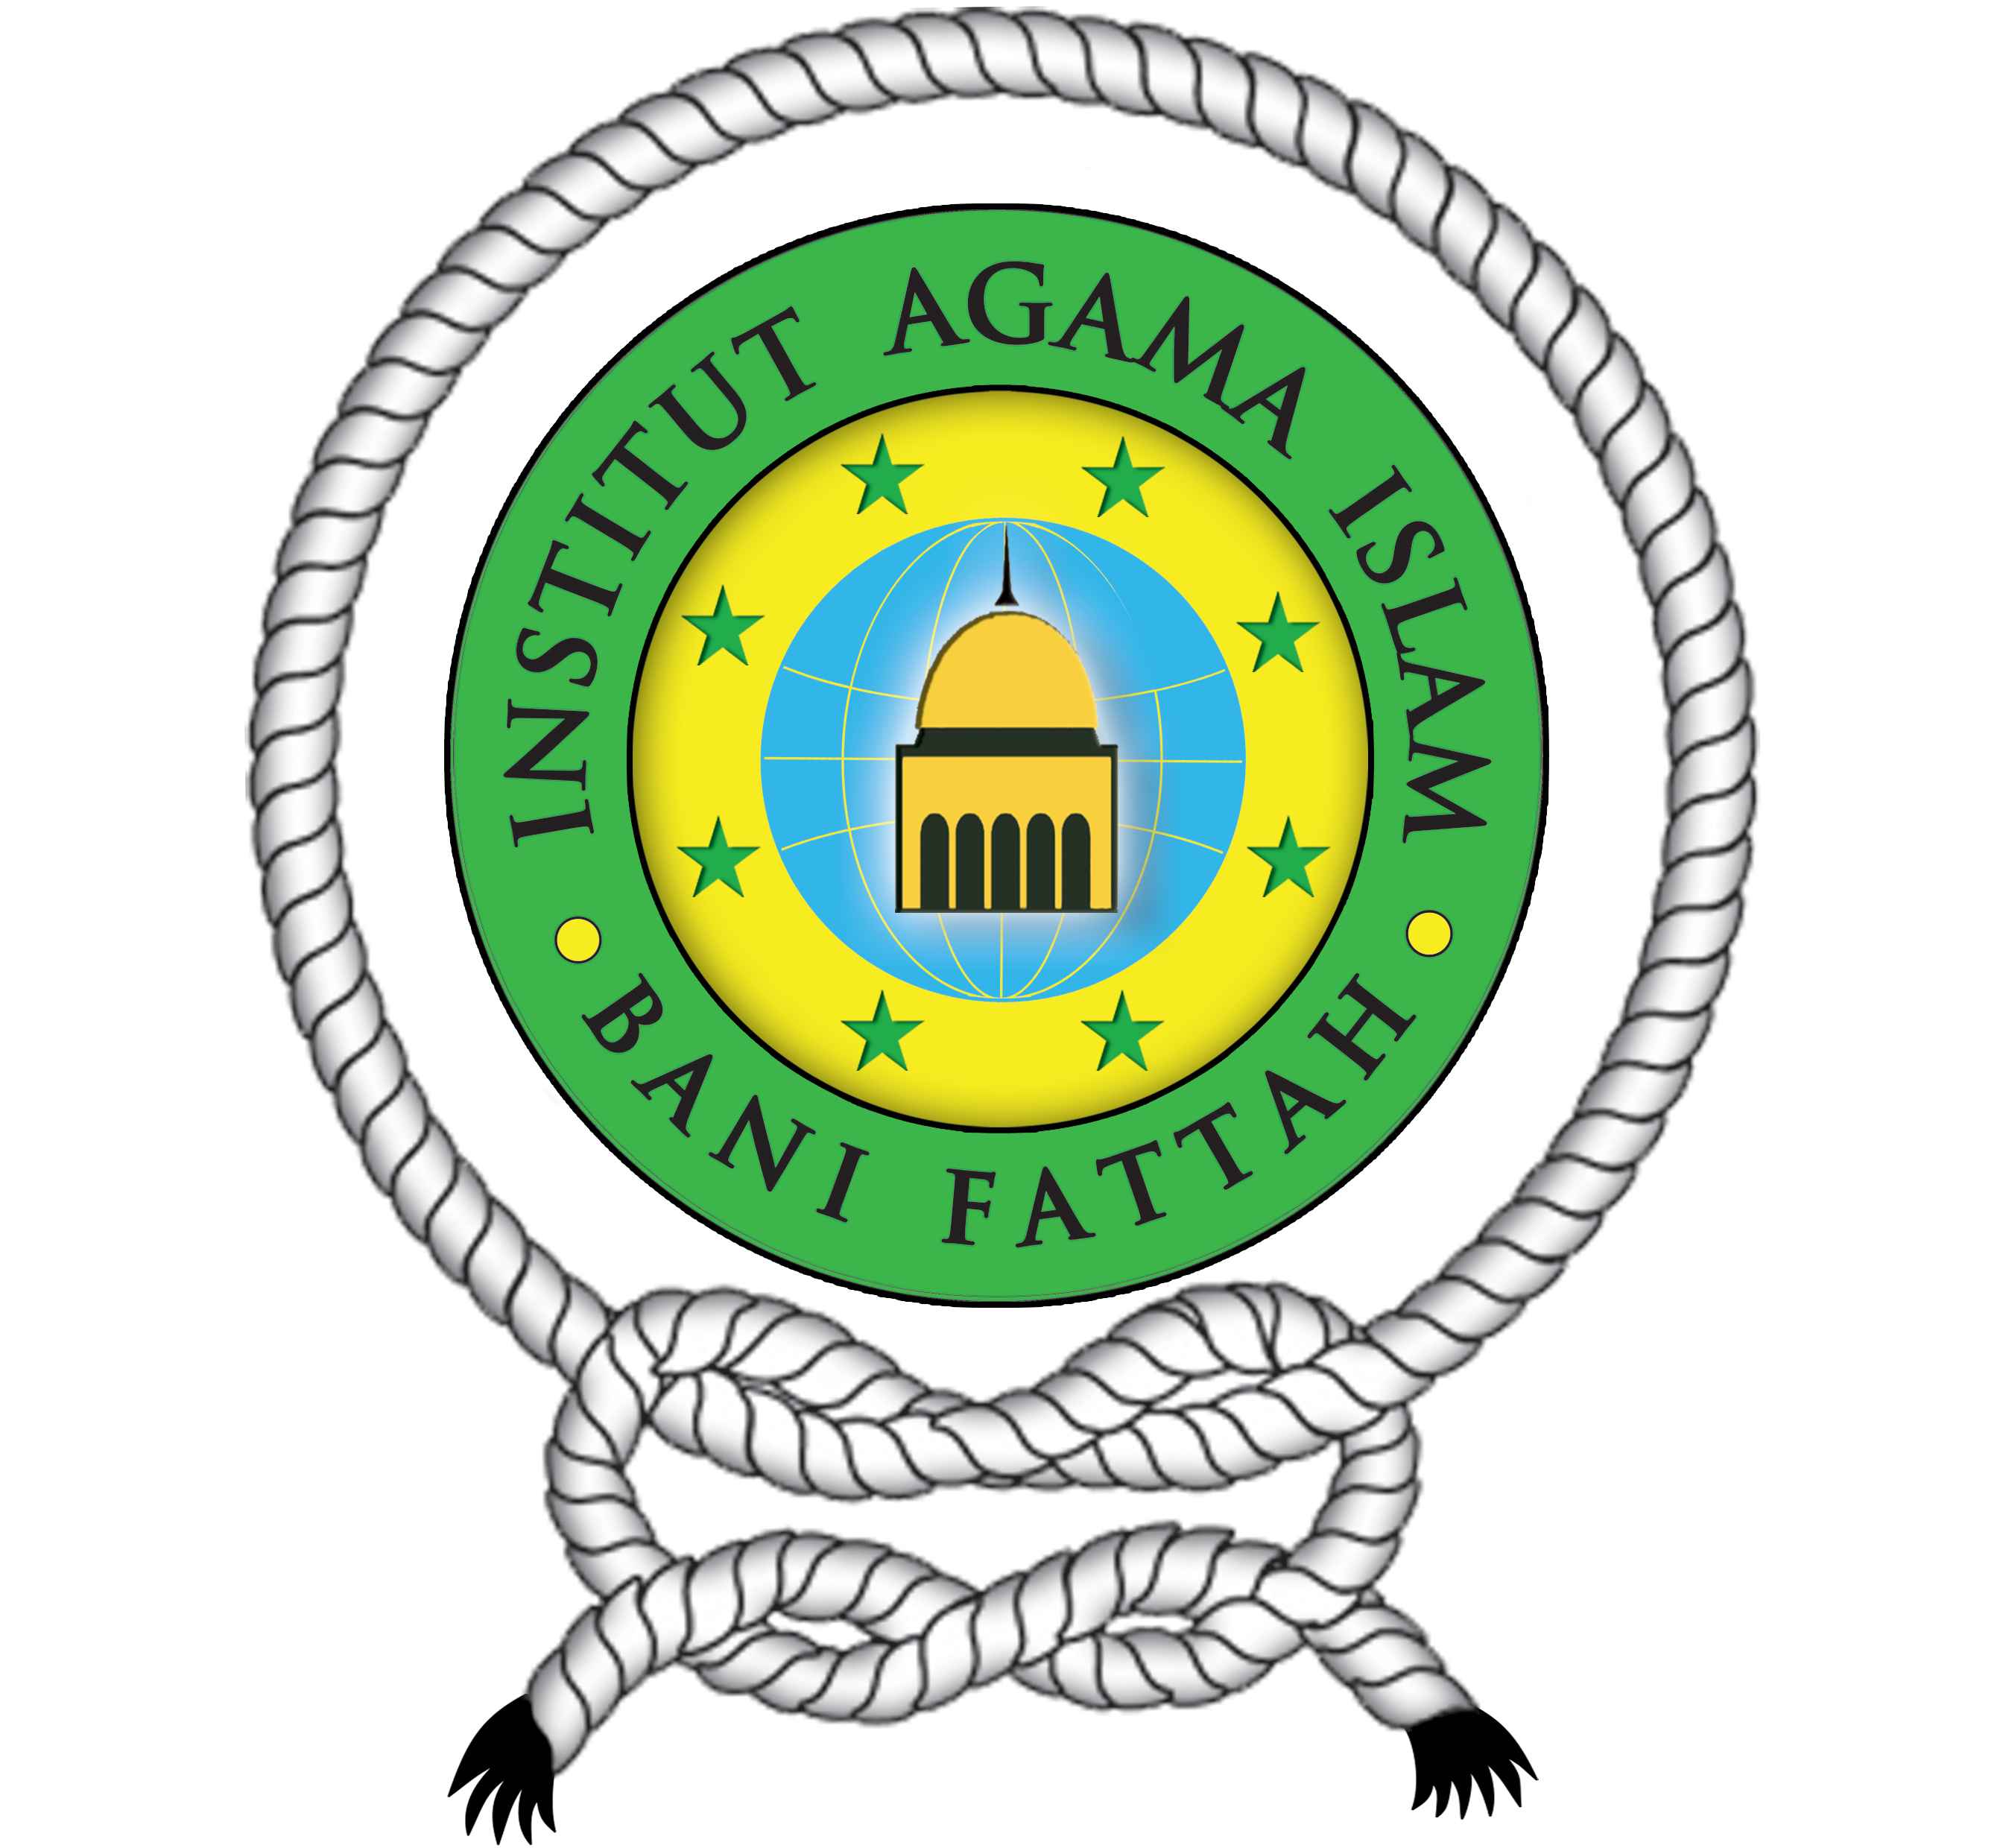 Institut Agama Islam Bani Fattah Jombang